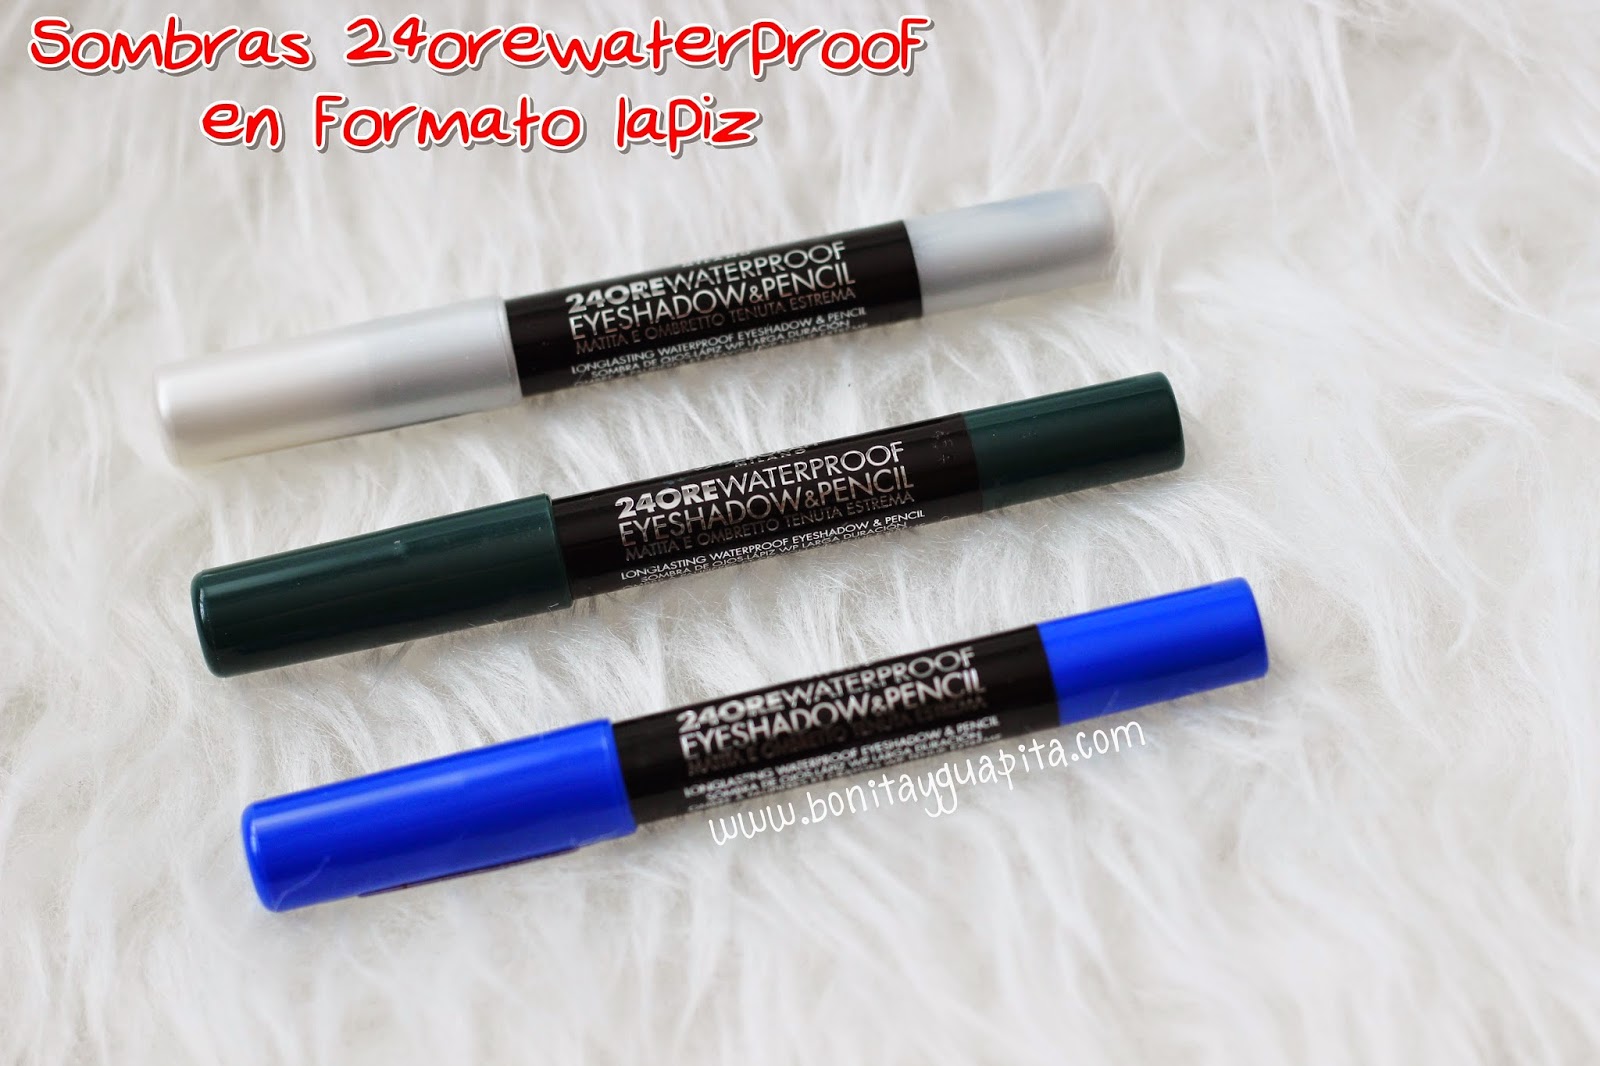 24 ore waterproof eyeshadow & pencil 01 08 09